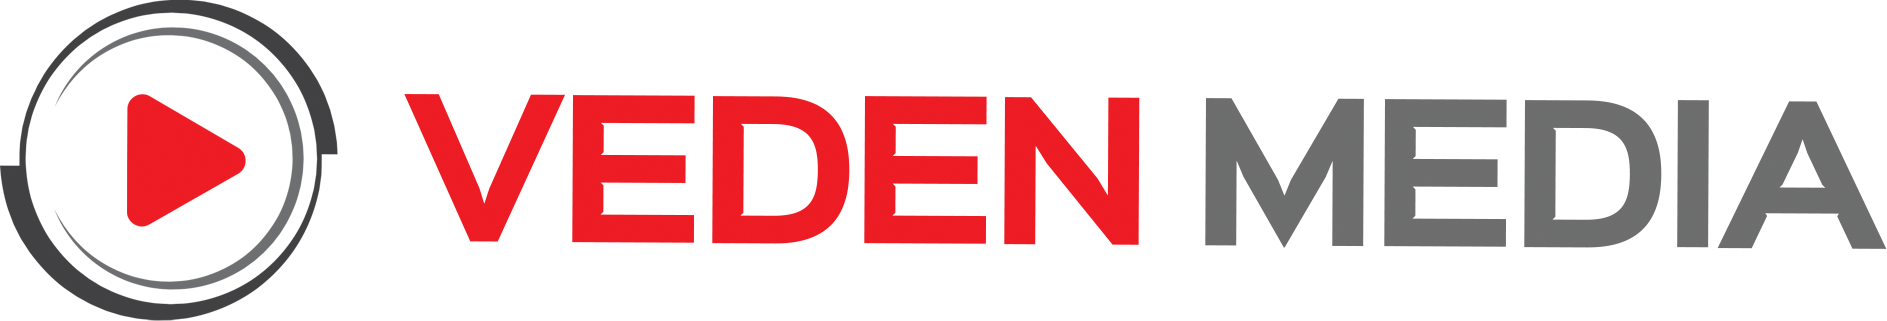 Veden Media logo